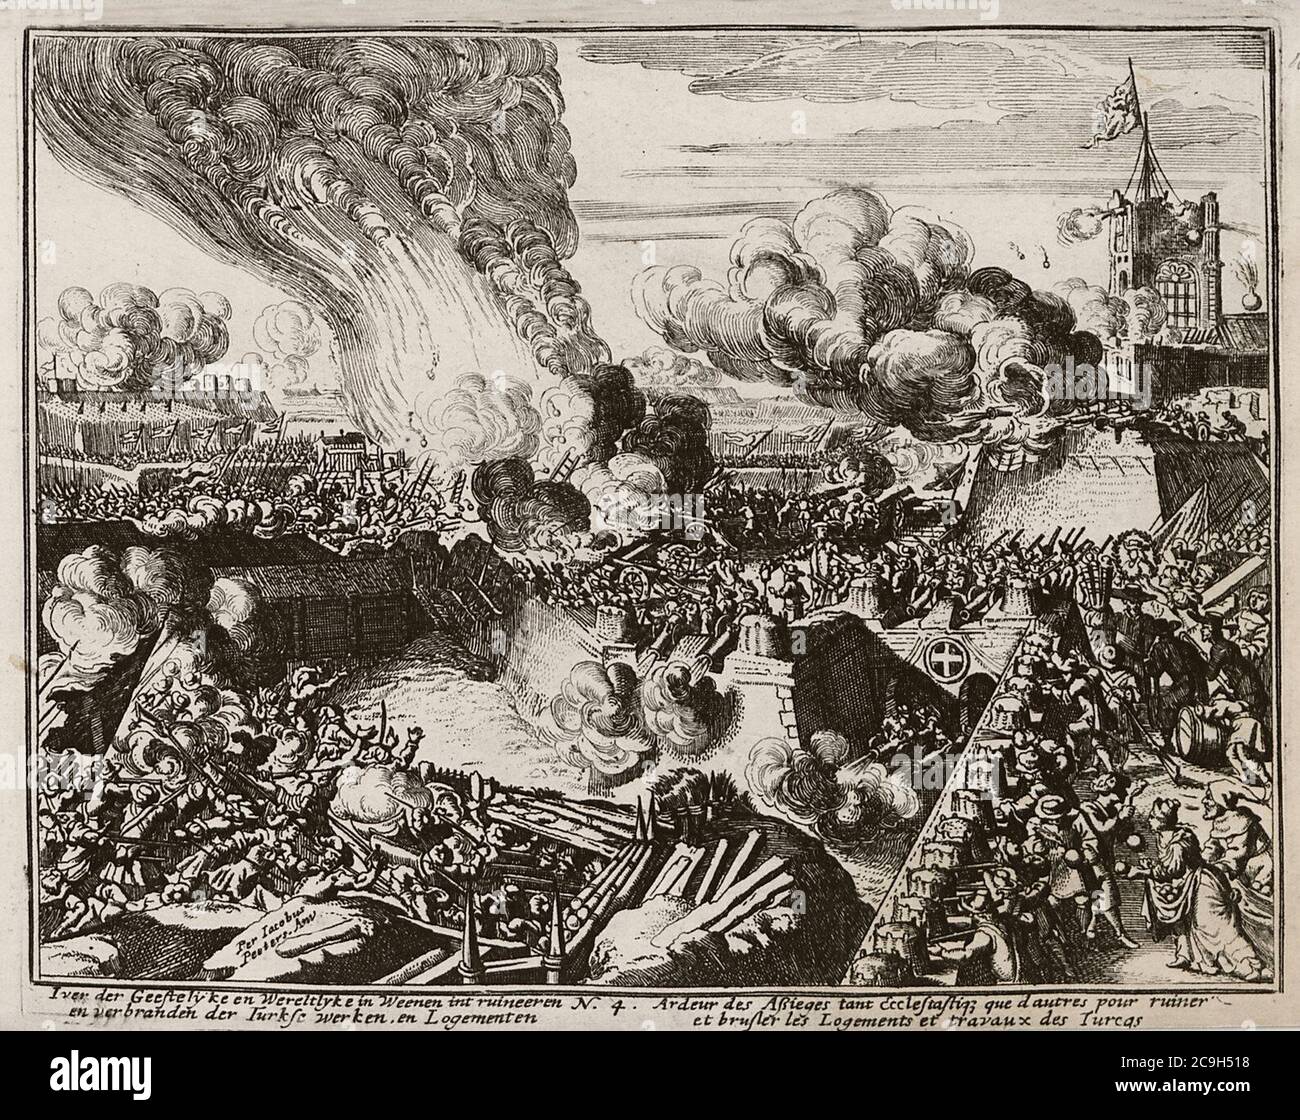 Iver der Geestelyke en Wereltlyke in Weenen int ruineeren en verbranden der Turkse werken en Logementen - Peeters Jacob - 1686. Foto Stock